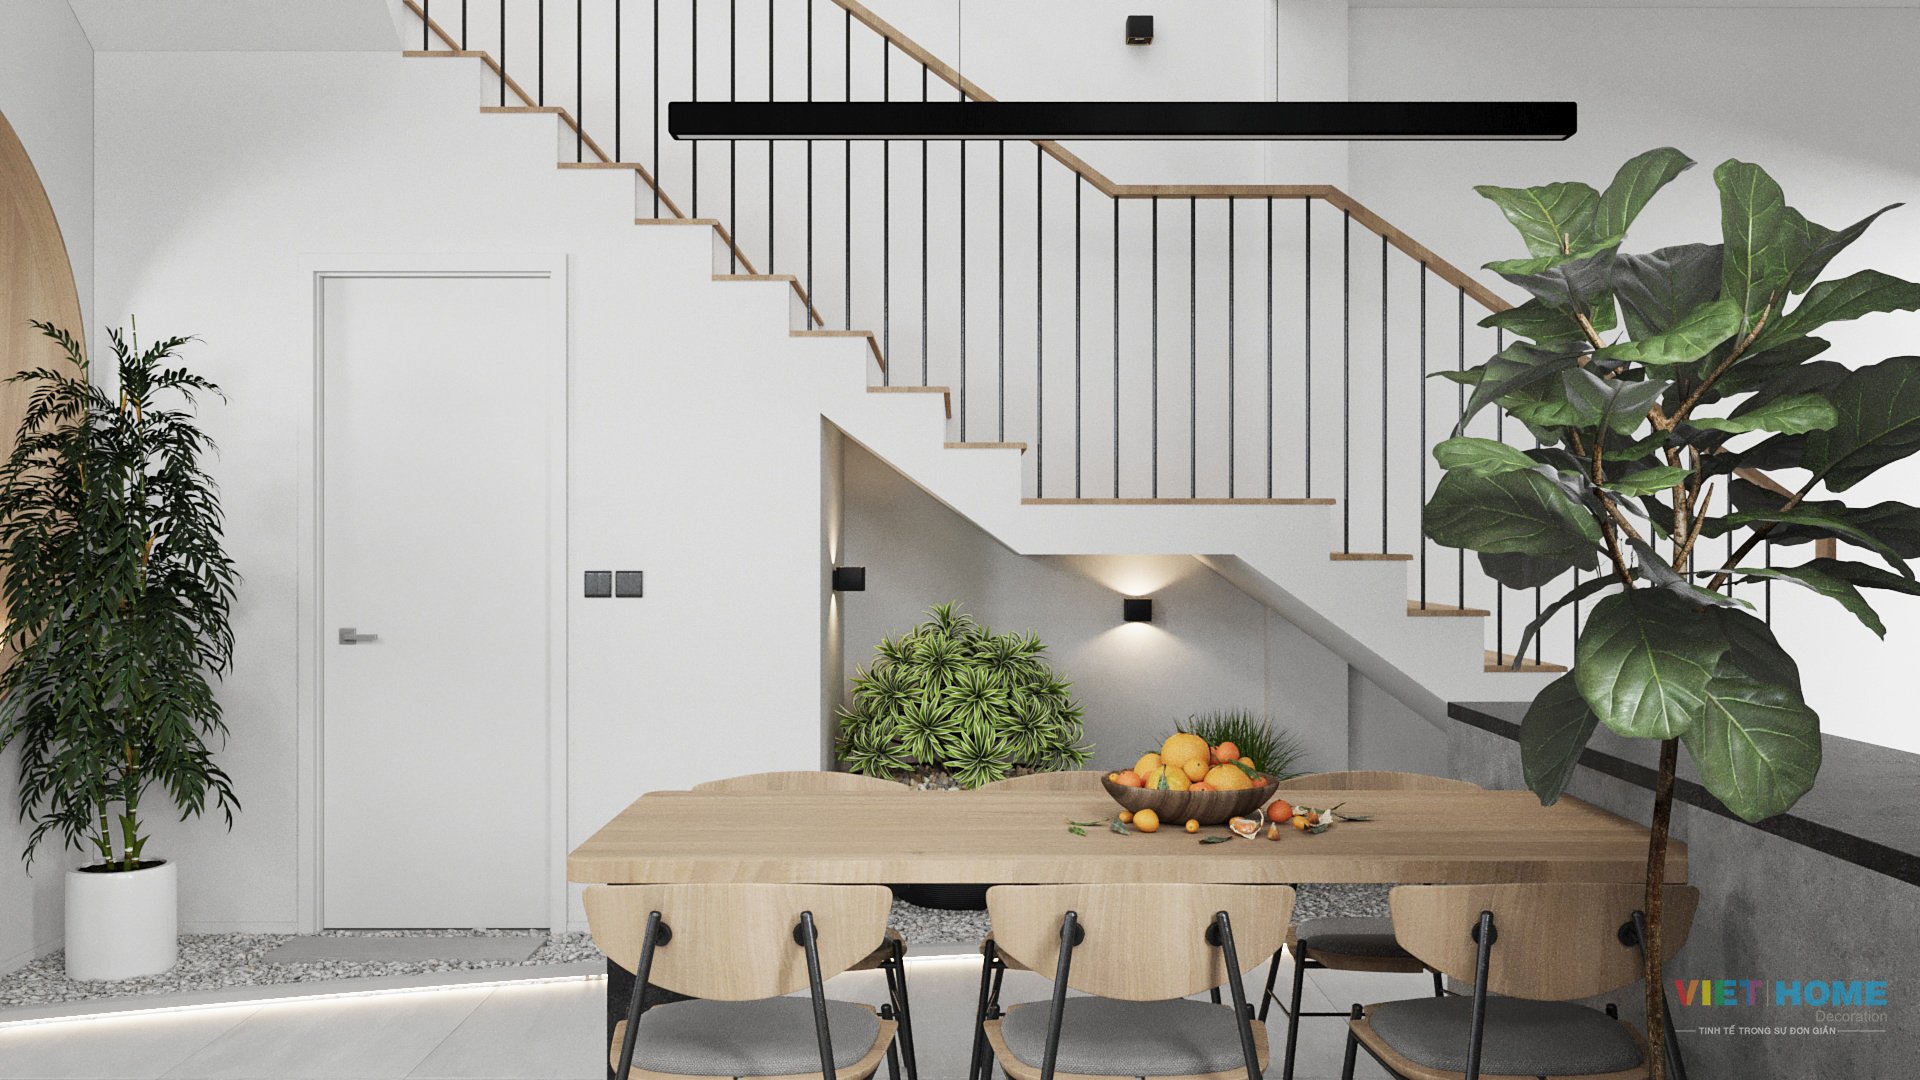 Chi tiết thiết kế nội thất khu vực bếp - cầu thang tầng 1 dự án La Vida Vũng Tàu